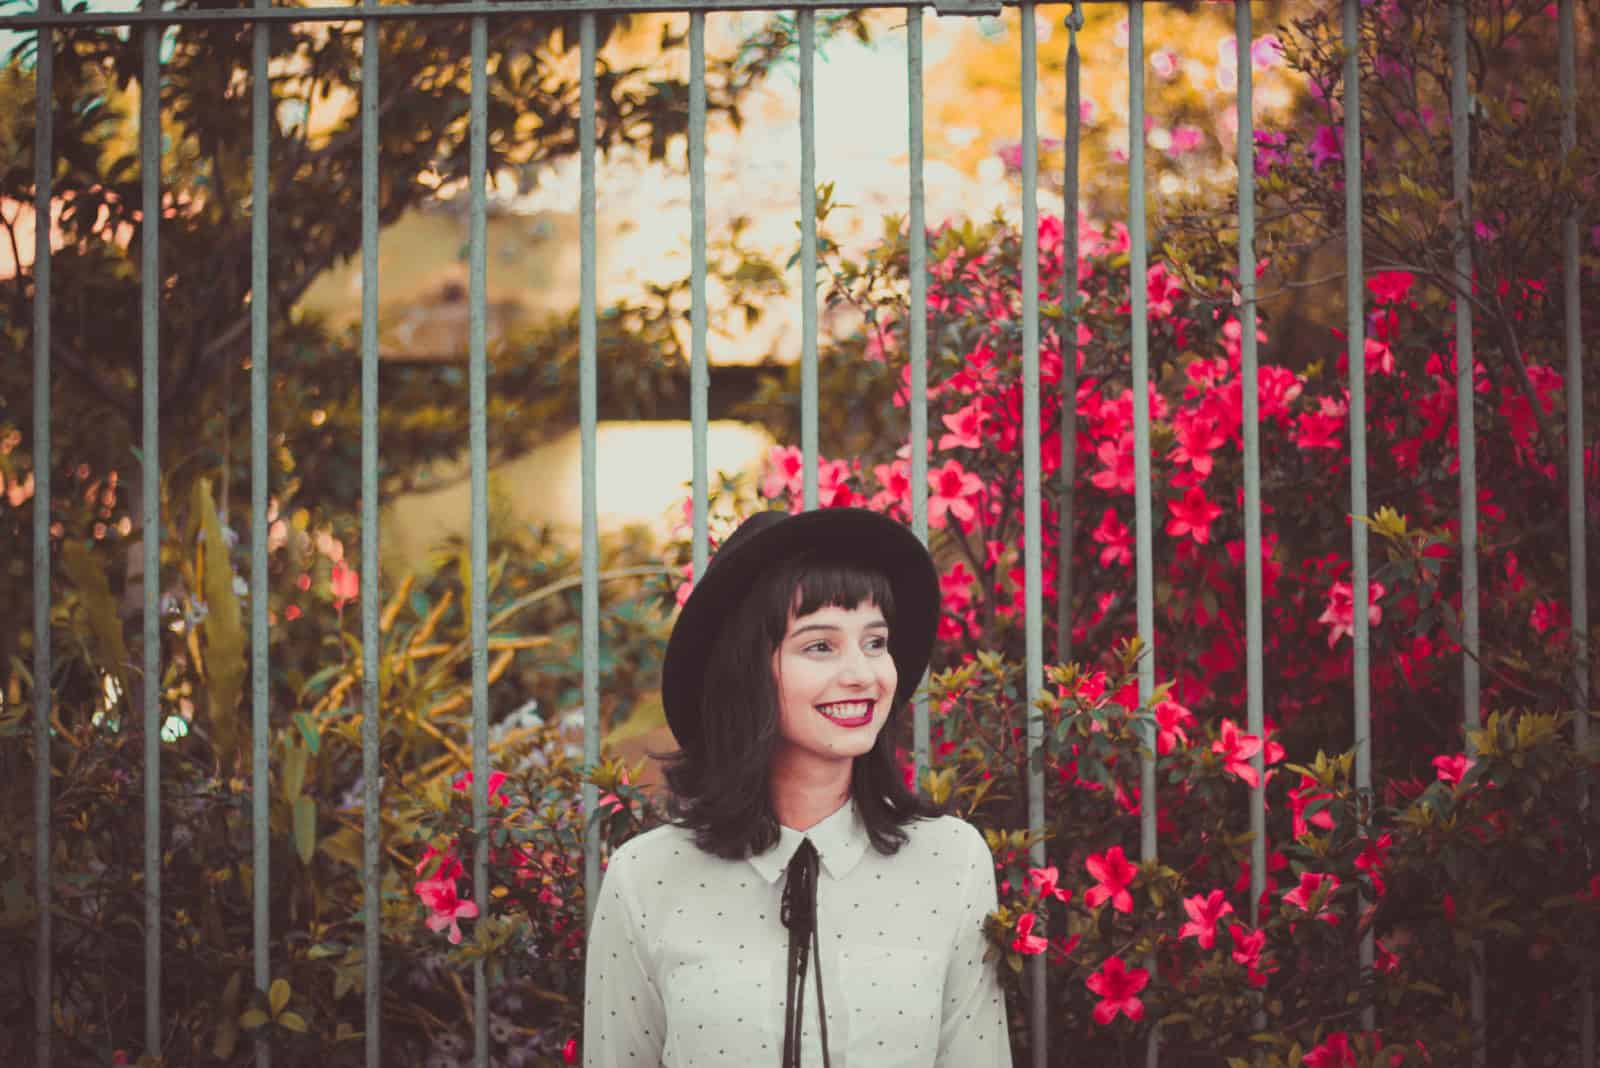 femme heureuse avec un chapeau debout près d'une clôture métallique